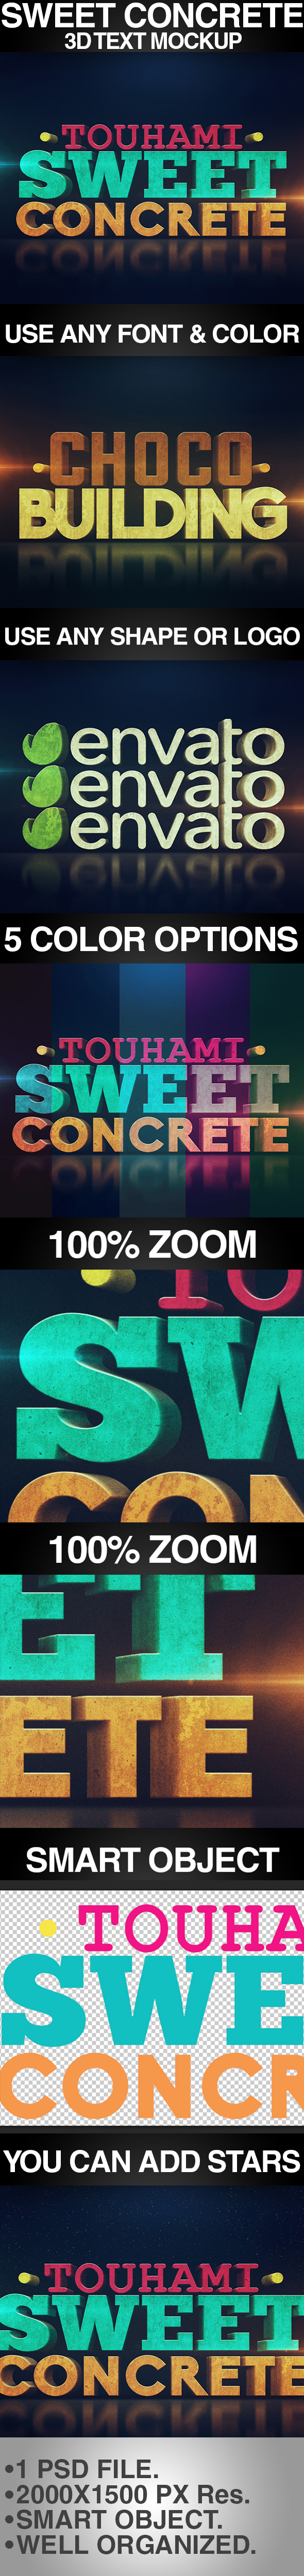 Sweet Concrete 3D Text Mockup